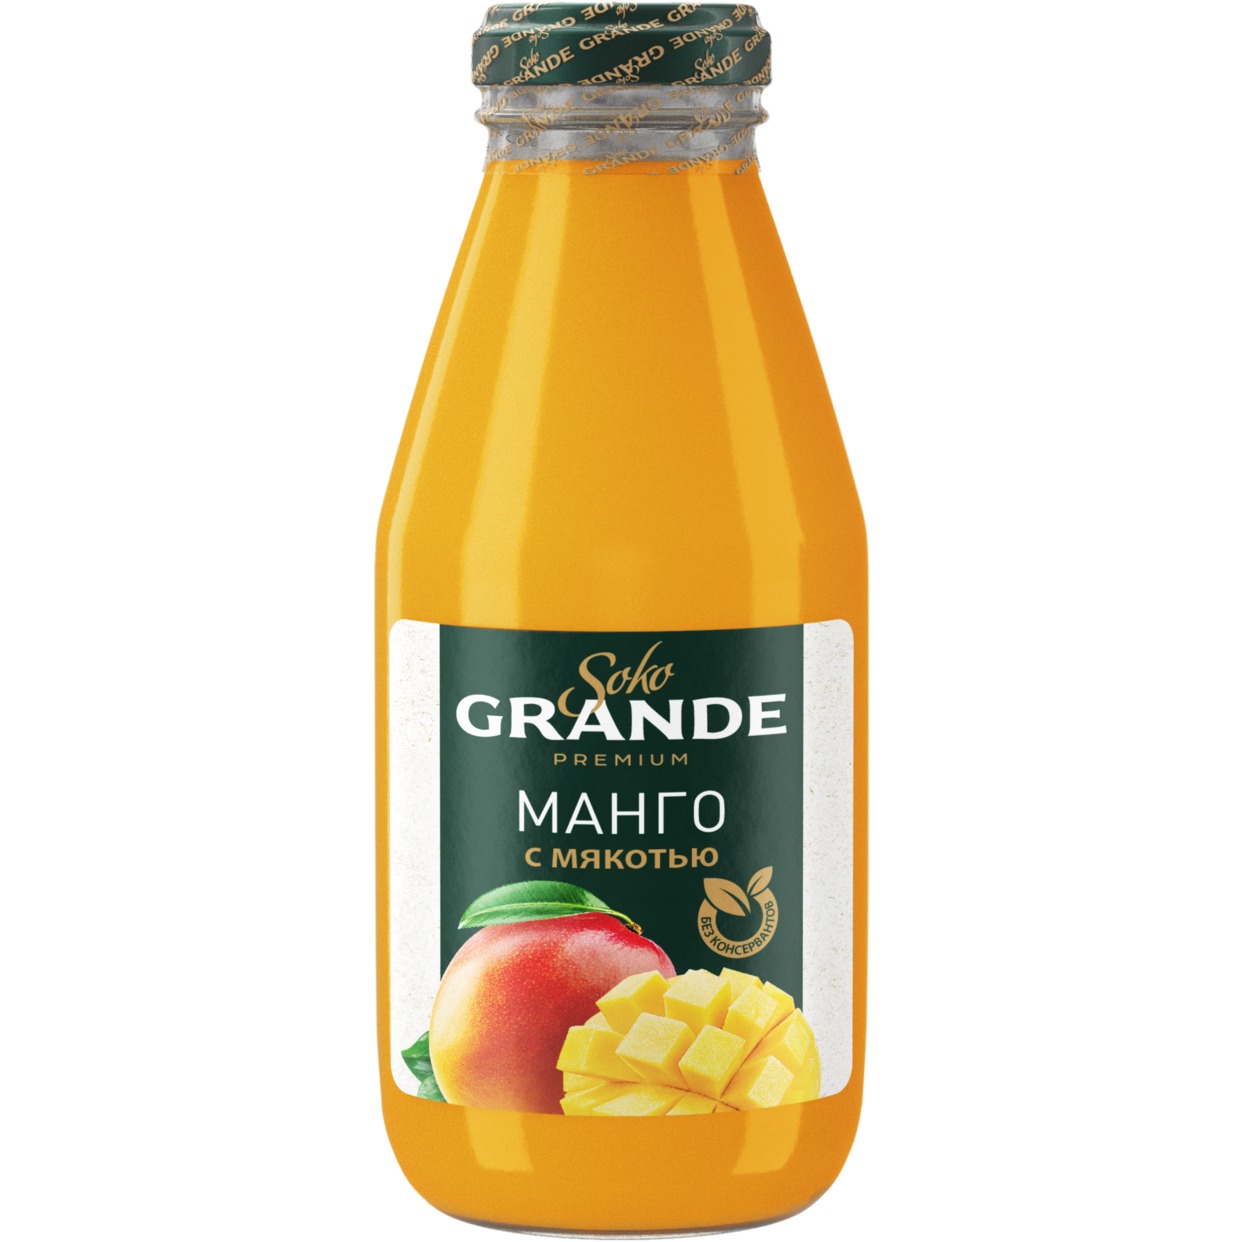 SOKO GRANDE Нектар из манго с мякотью 0,3л по акции в Пятерочке